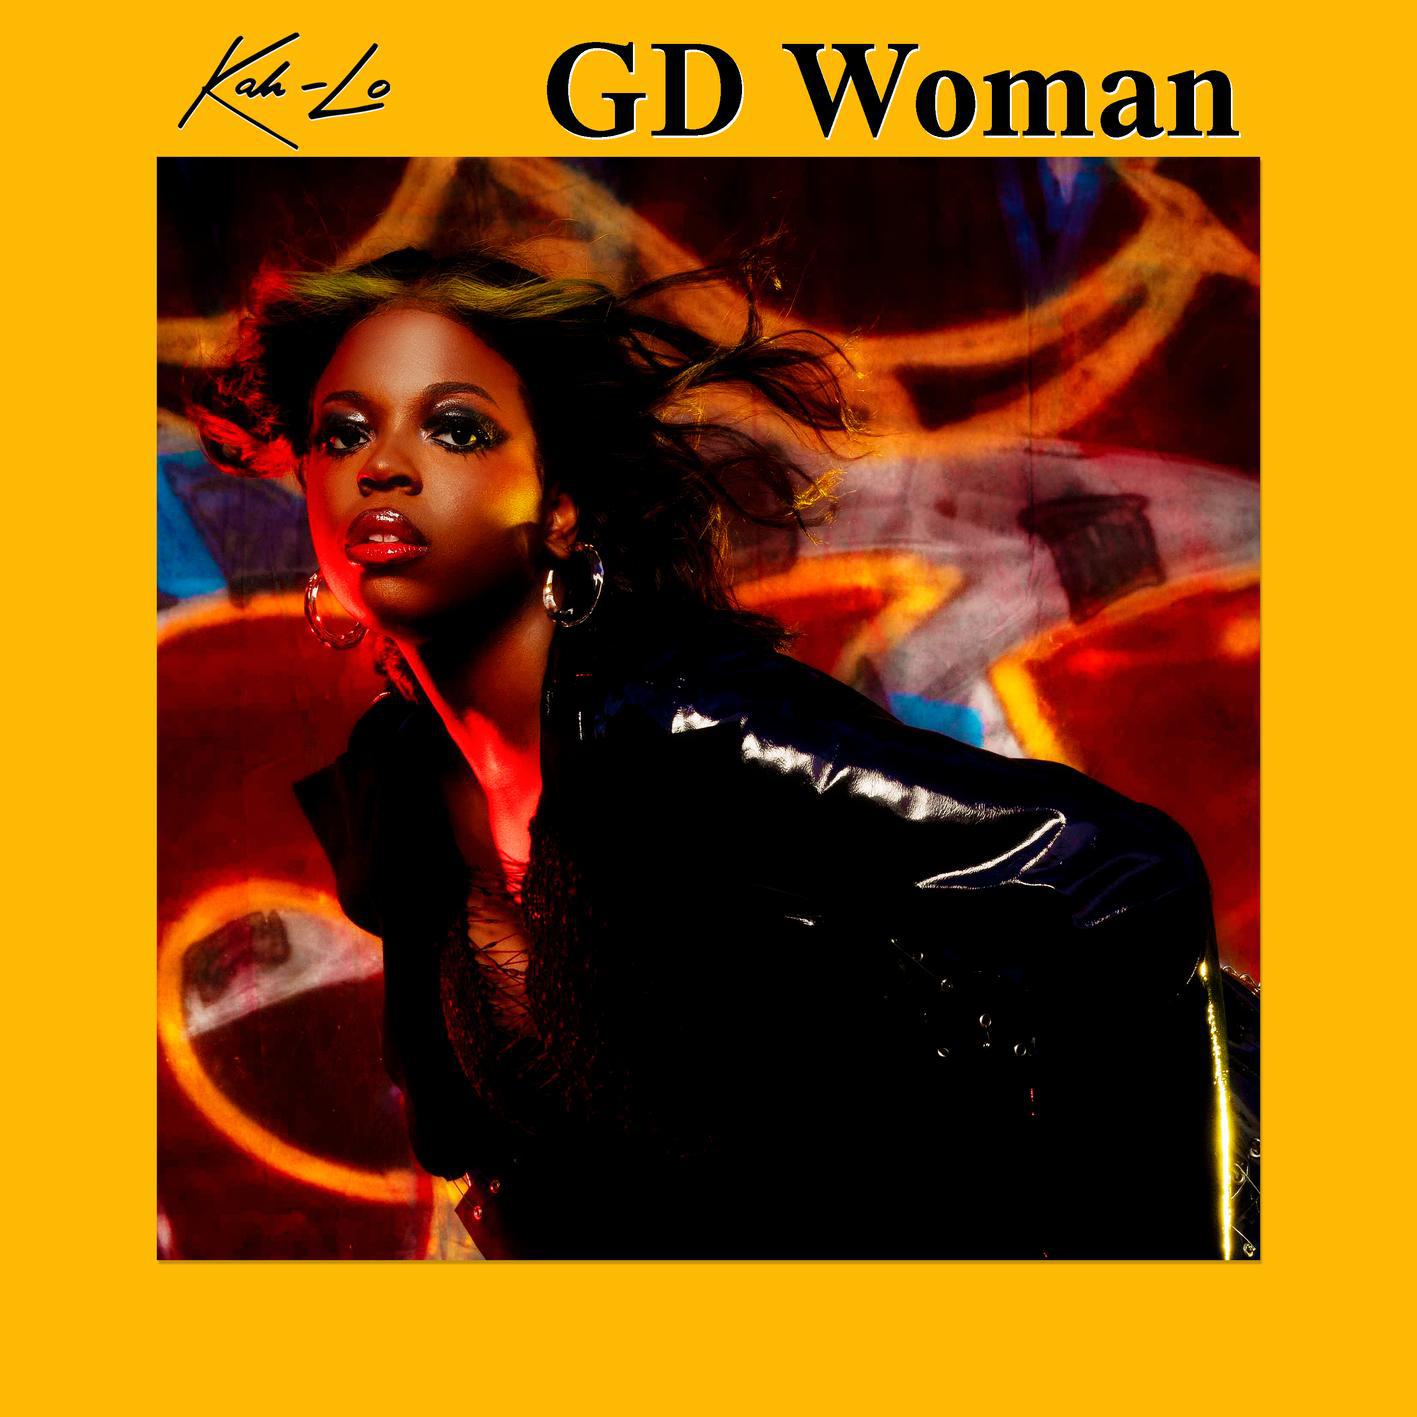 Kah-Lo - GD Woman